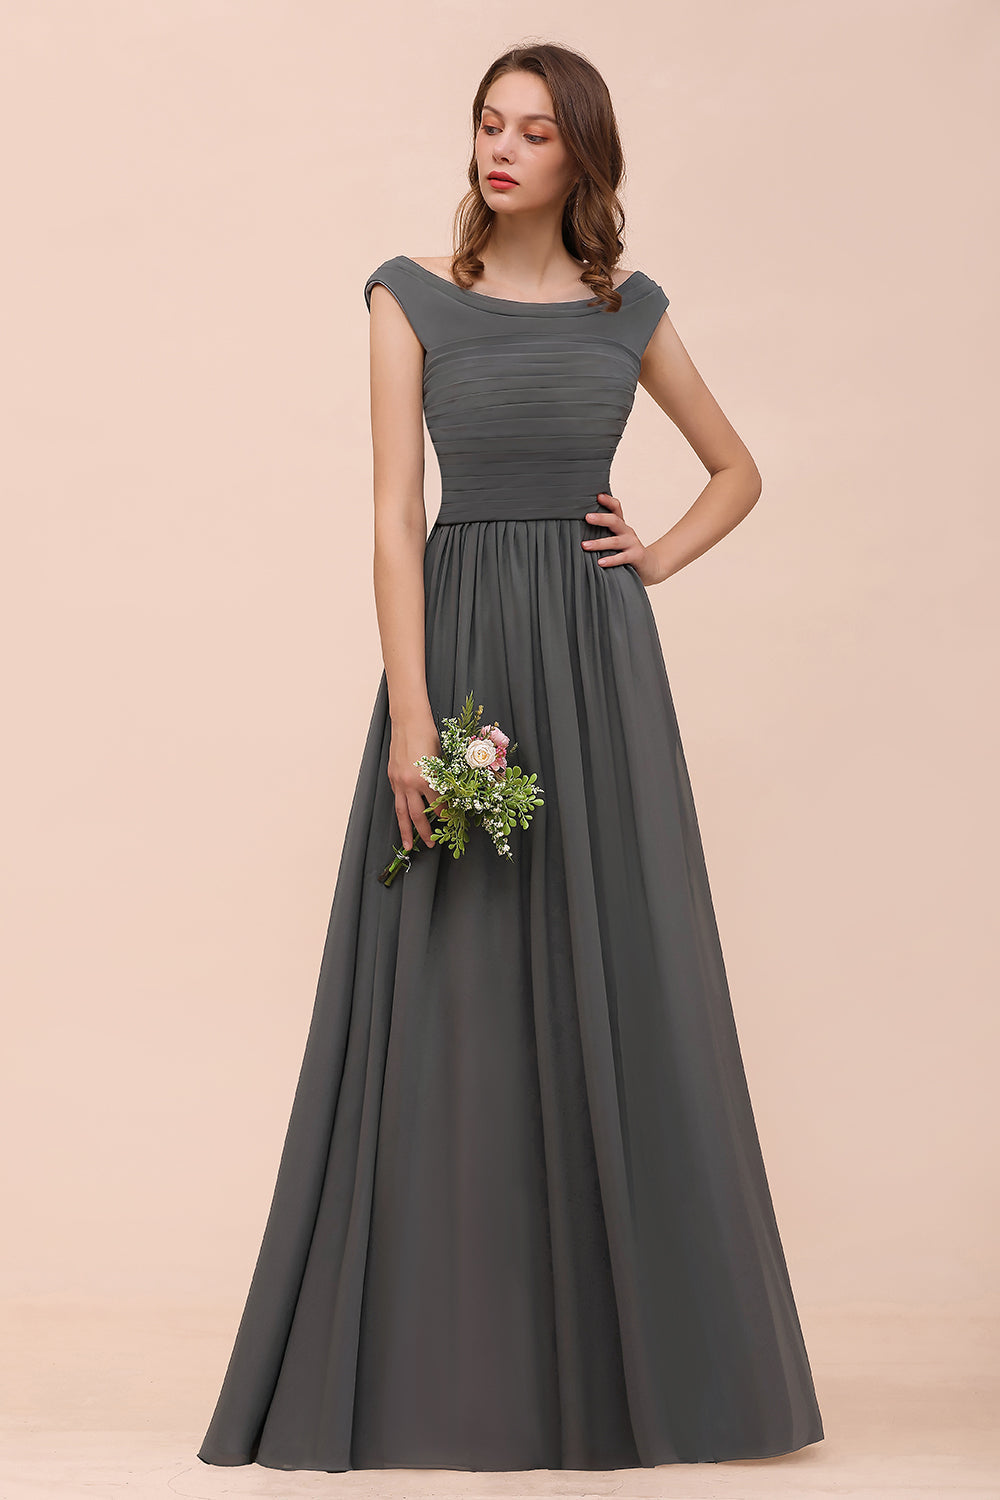 Bestellen Sie Brautjungfernkleider Lang Dunkel Grau online bei babyonlinedress.de. Kleider Für Bautjungfern nach maß anfertigen.